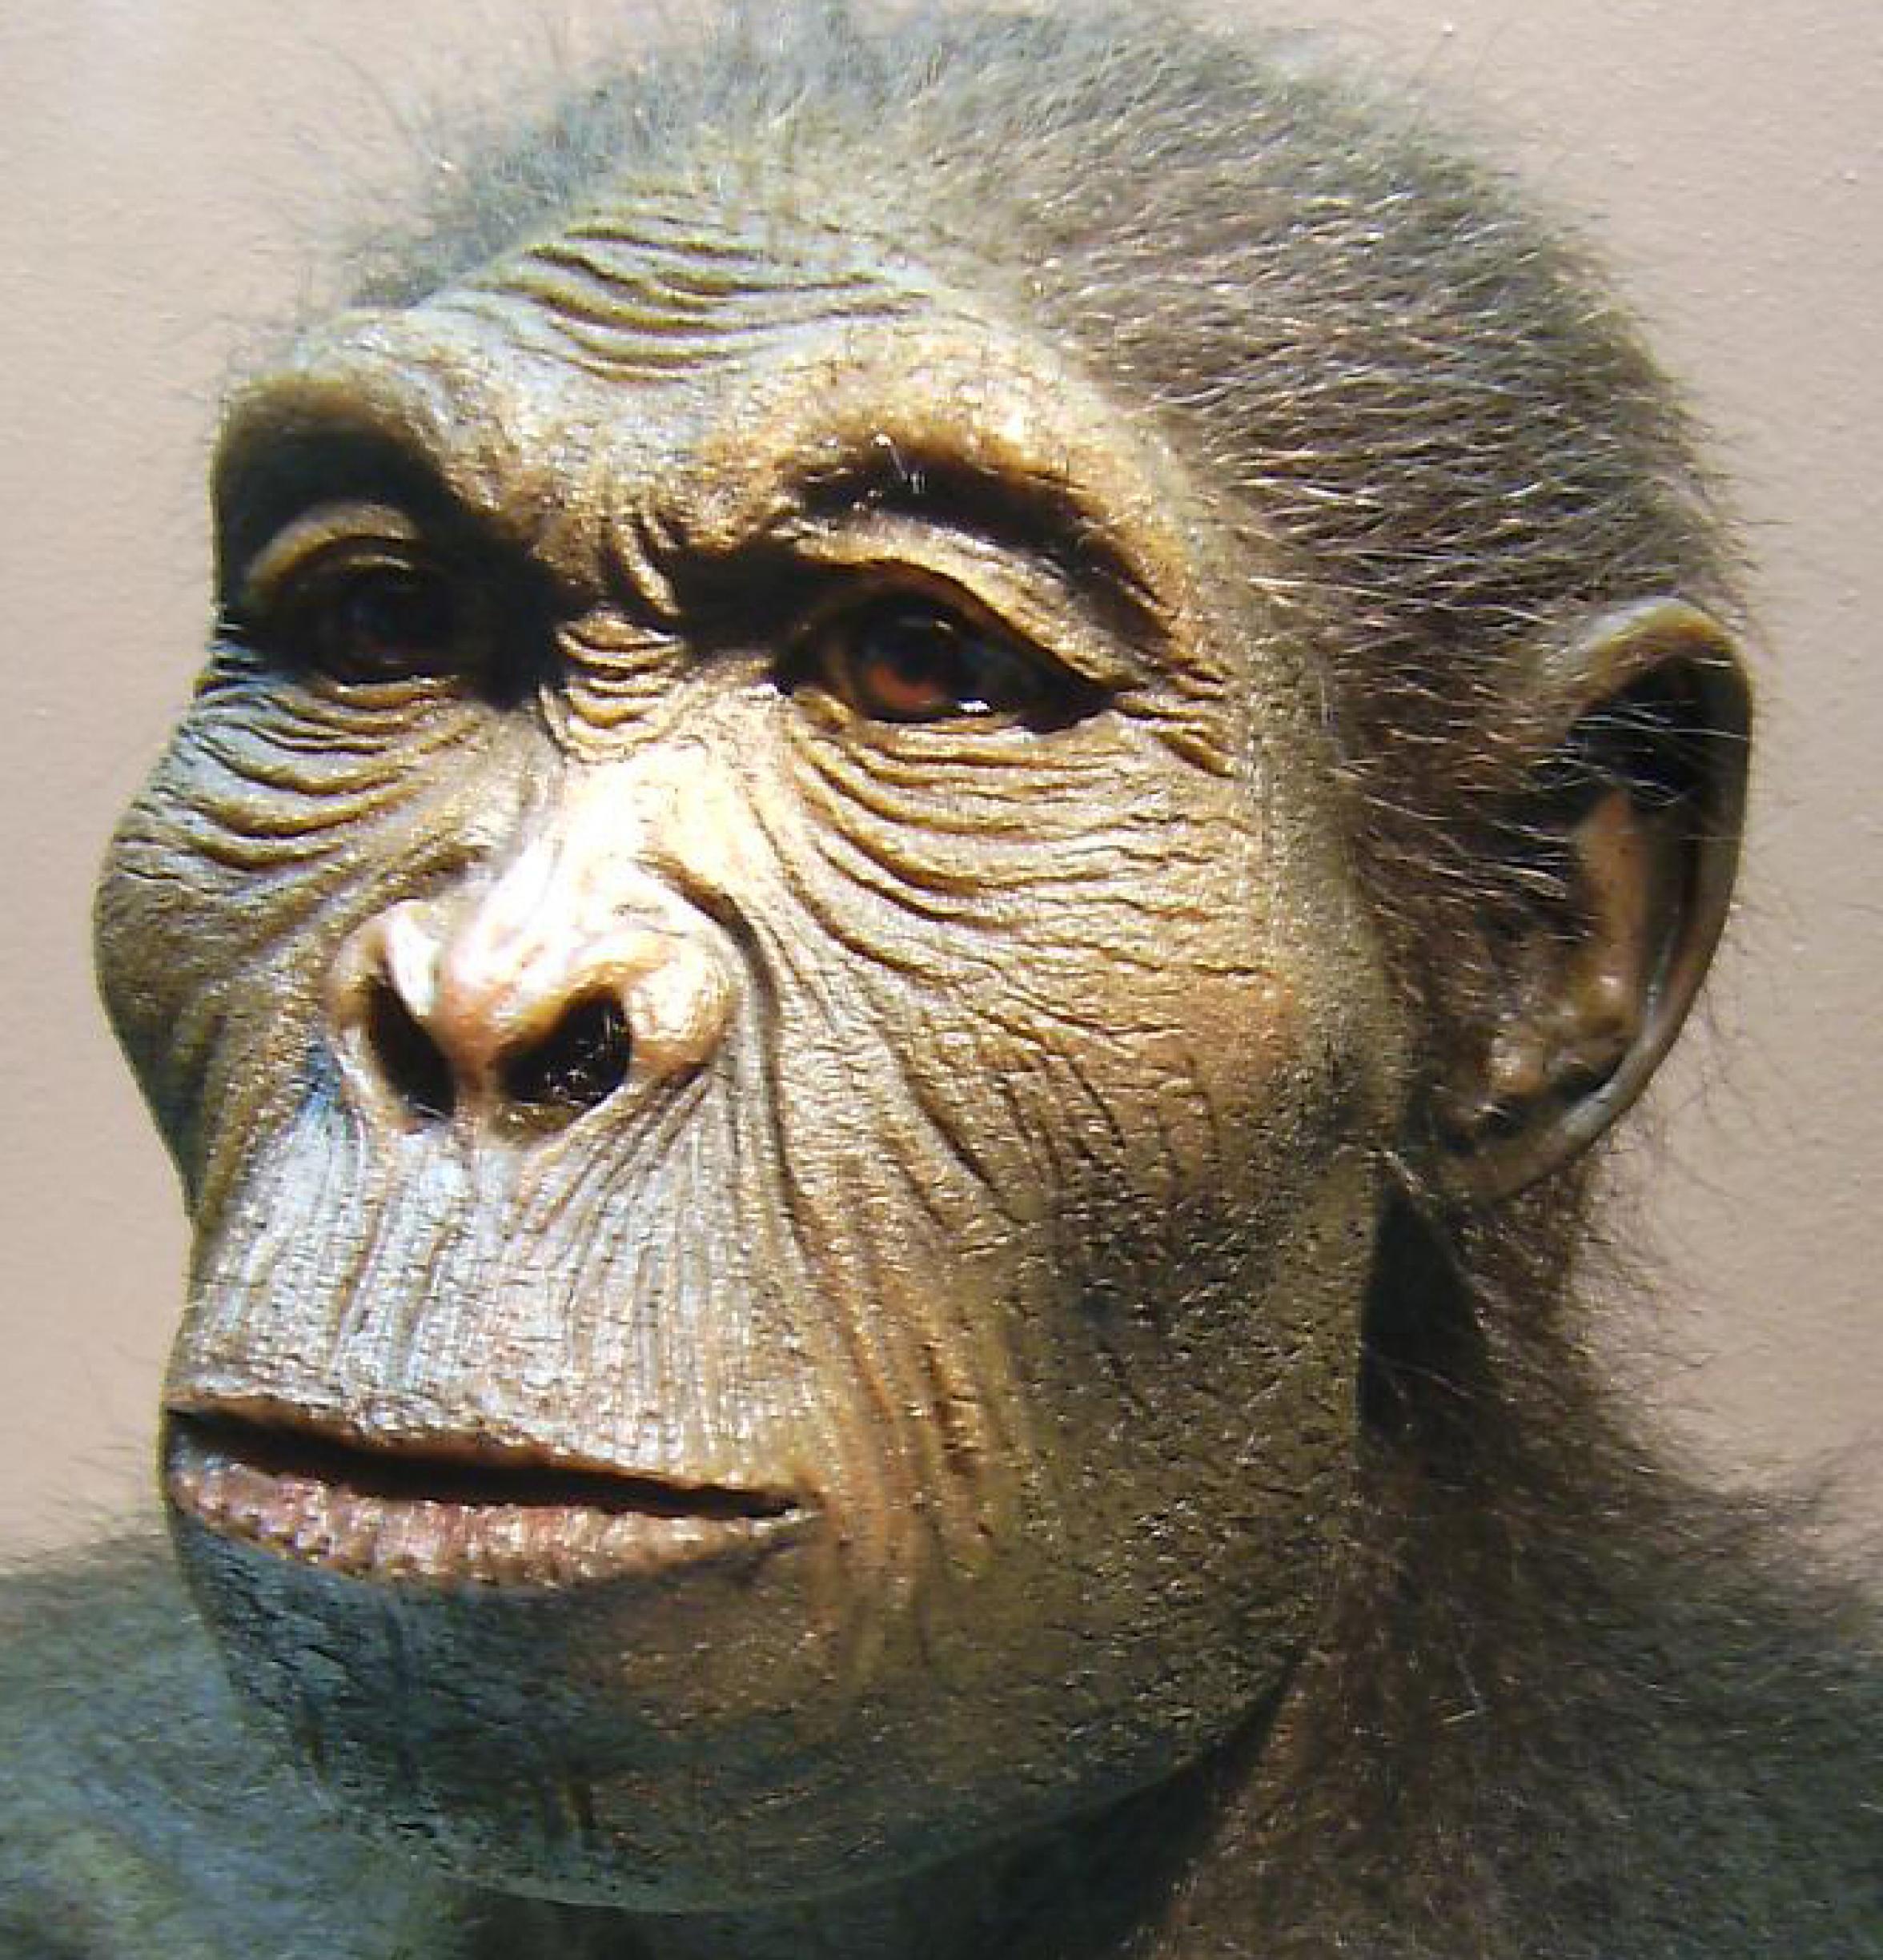 Hier ist eine lebensnahe Rekonstruktion des Kopfes von Homo habilis zu sehen, des vermutlich ersten Vertreters der Gattung Mensch. Die Augen blicken menschlich, doch vieles am Gesicht erinnert noch an seine äffischen Vorfahren. Dieser Frühmensch lebte vor rund zwei Millionen Jahren in den Savannen Ostafrikas.